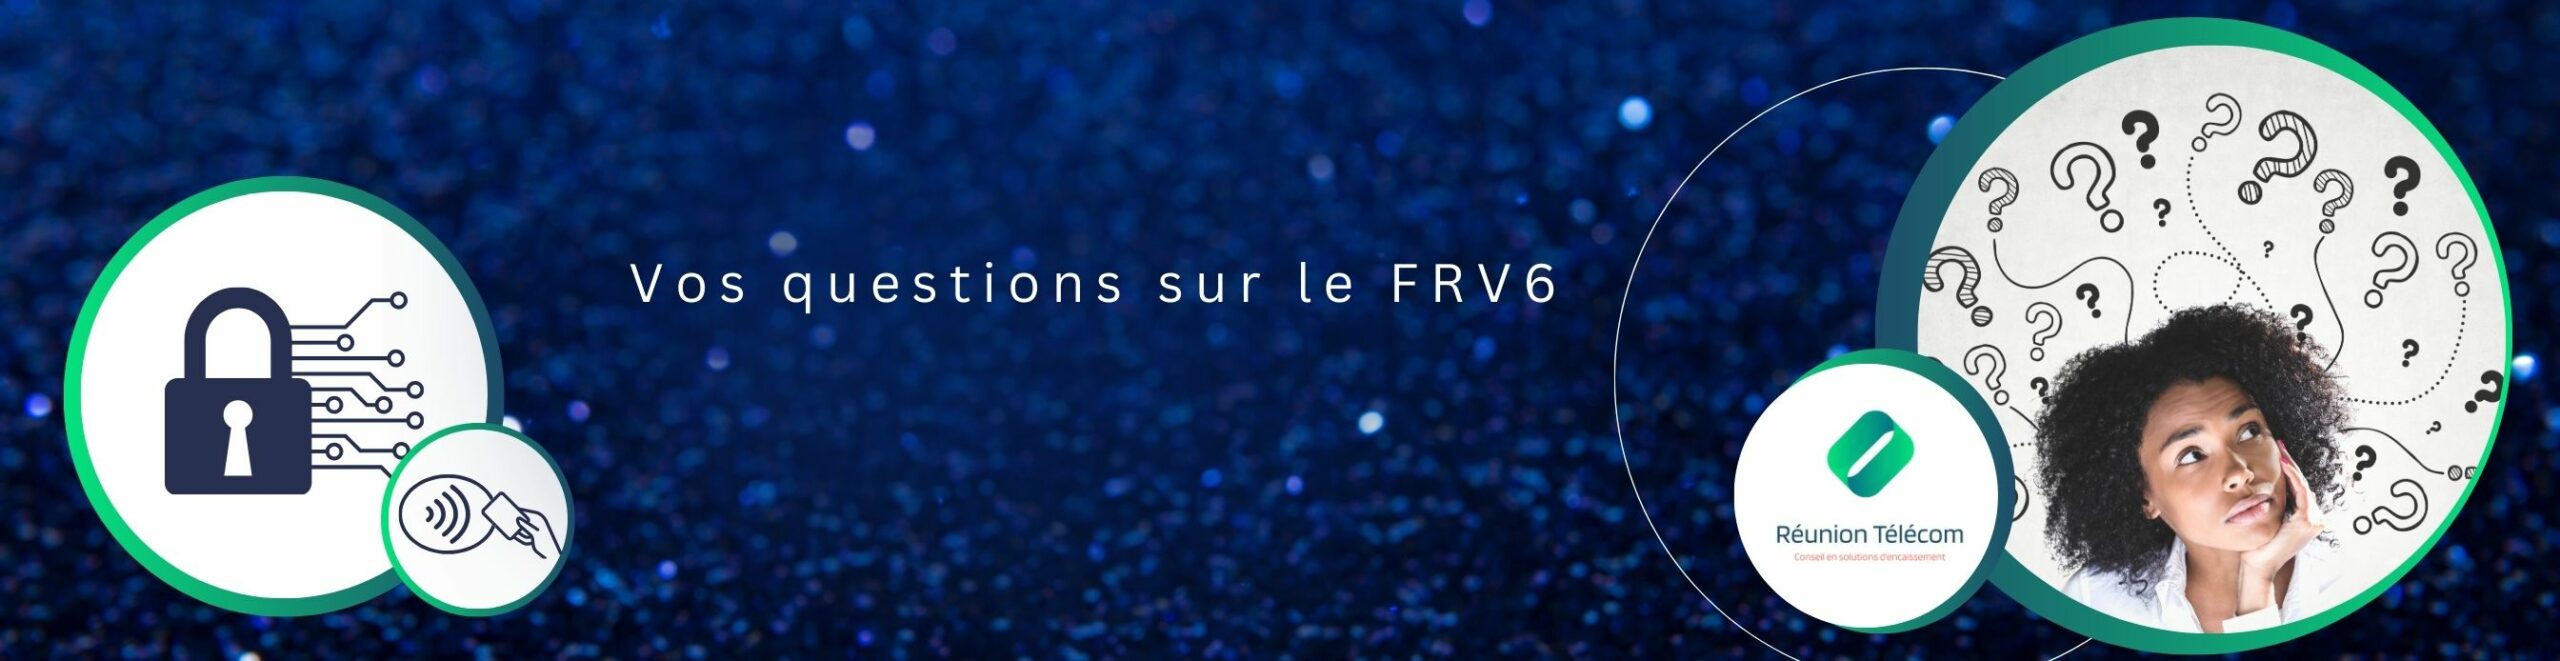 Réunion Telecom répond à vos questions FRV6